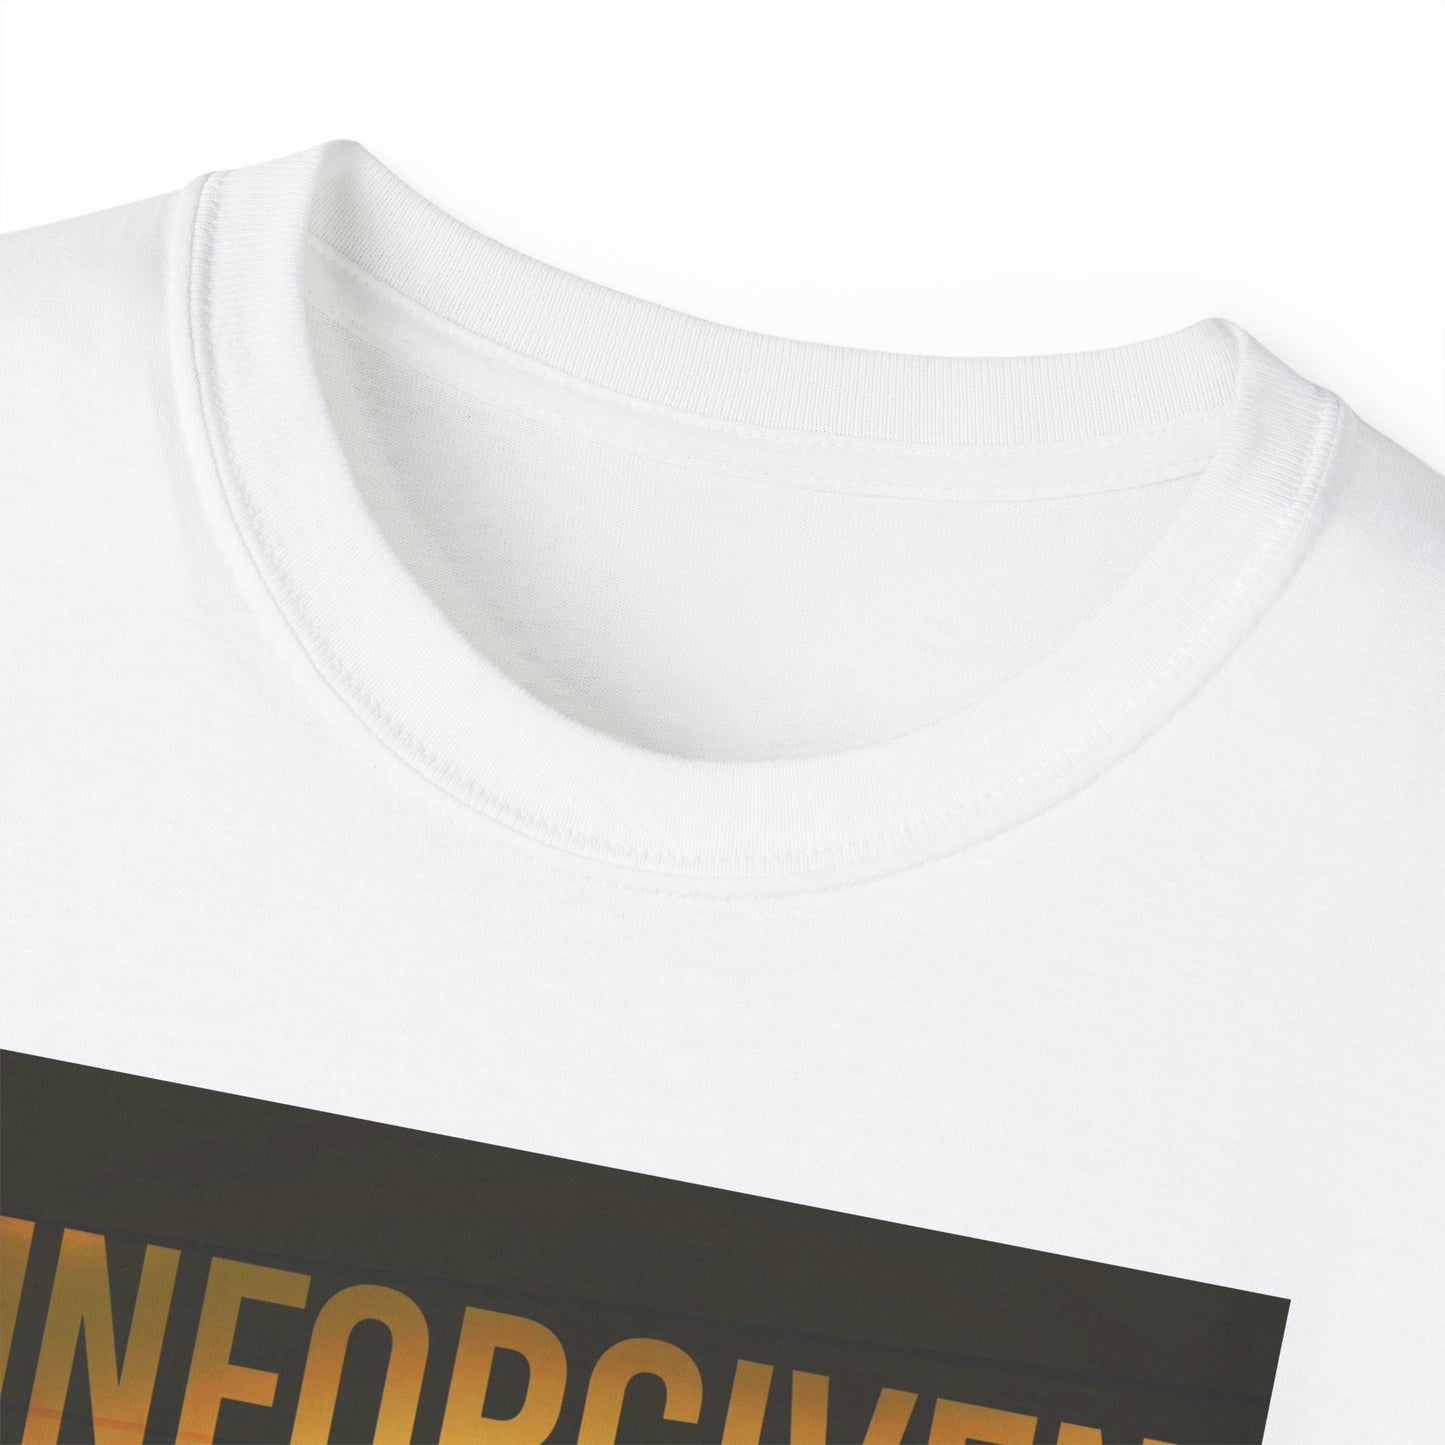 Unforgiven Victims - Unisex T-Shirt